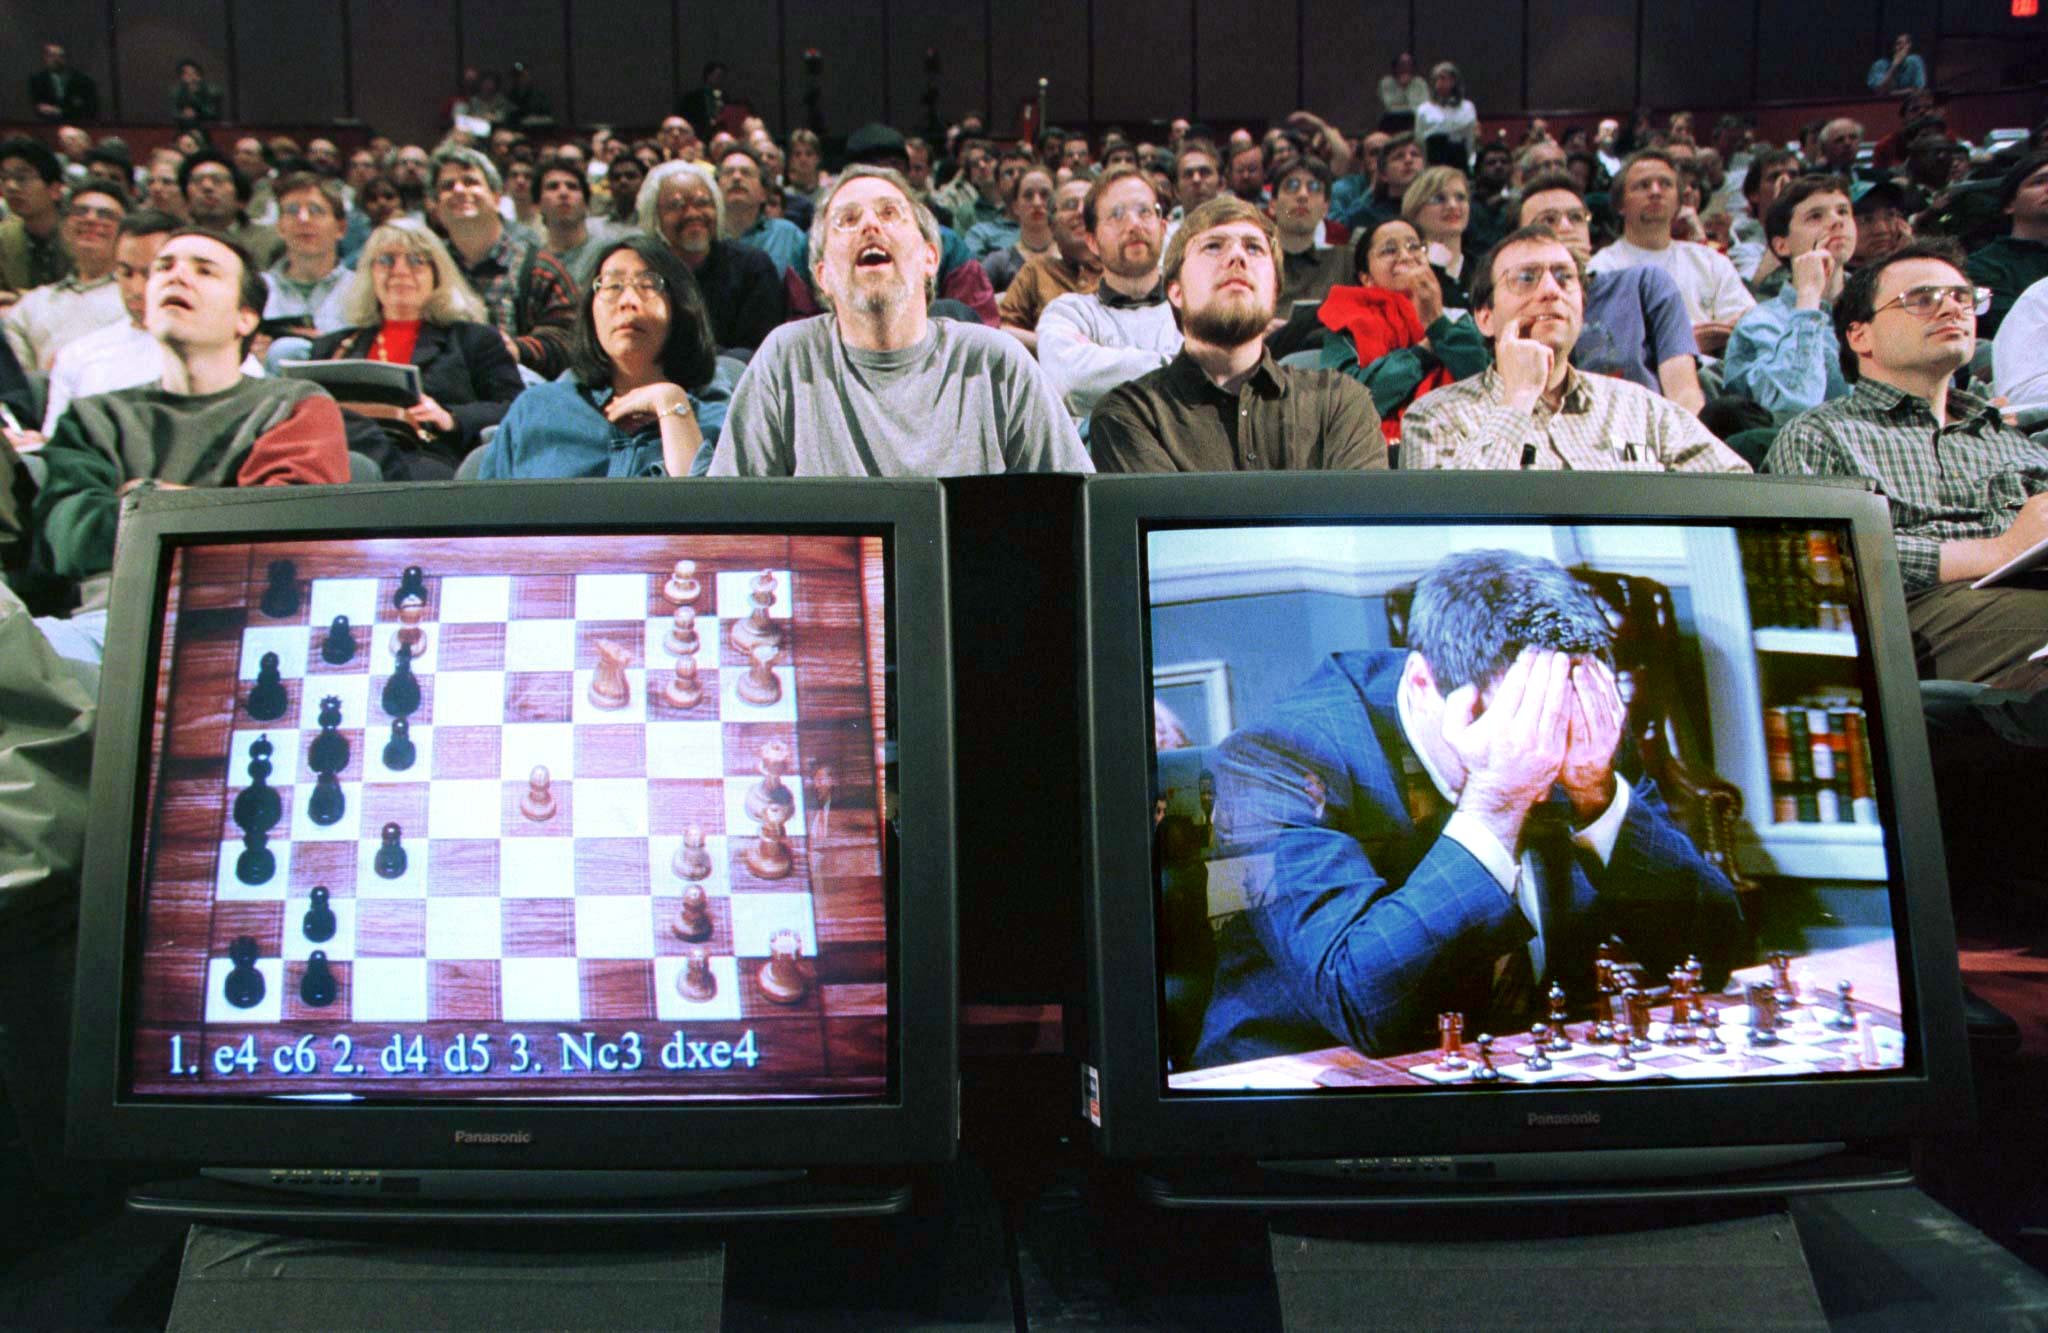 A saga de Kasparov, o campeão enxadrista que perdeu um duelo para